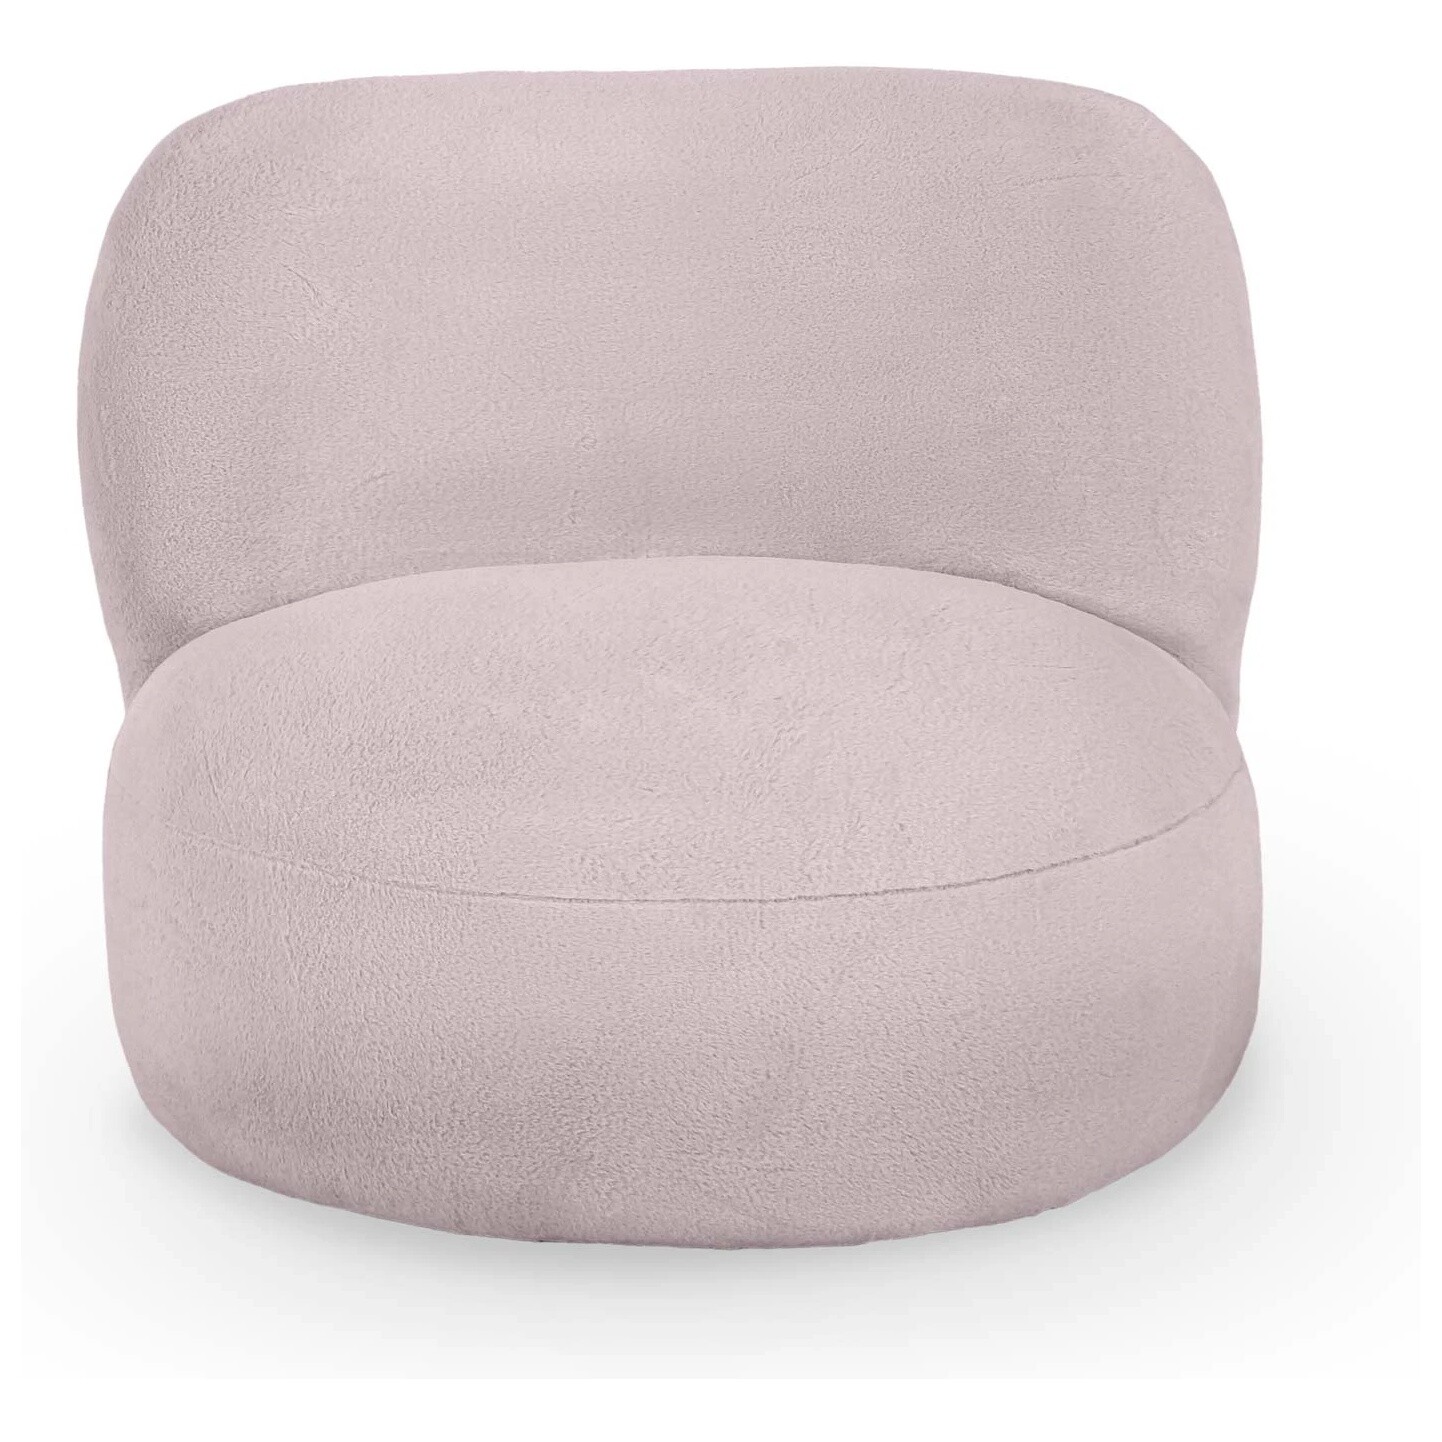 Кресло мягкое круглое без ножек искусственный мех розовое Patti 127-8